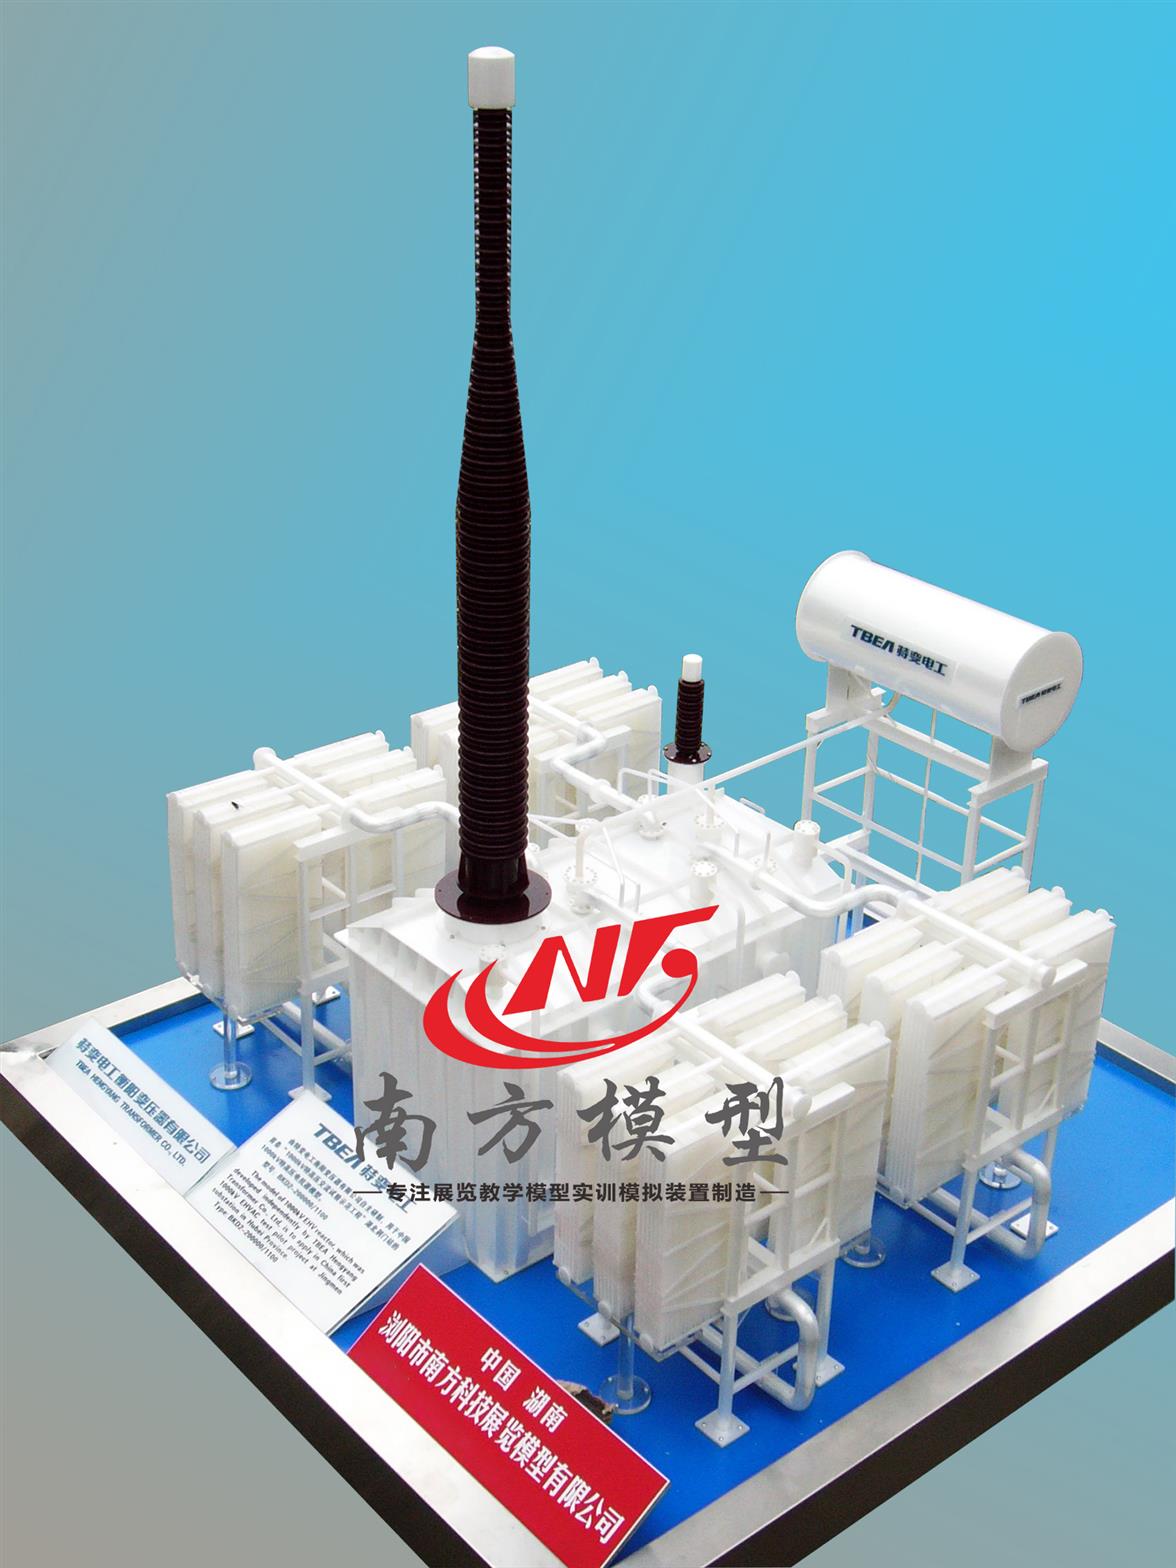 潍坊全新南方专业电力设备变压器换流阀模型生产商 优质变压器展示模型